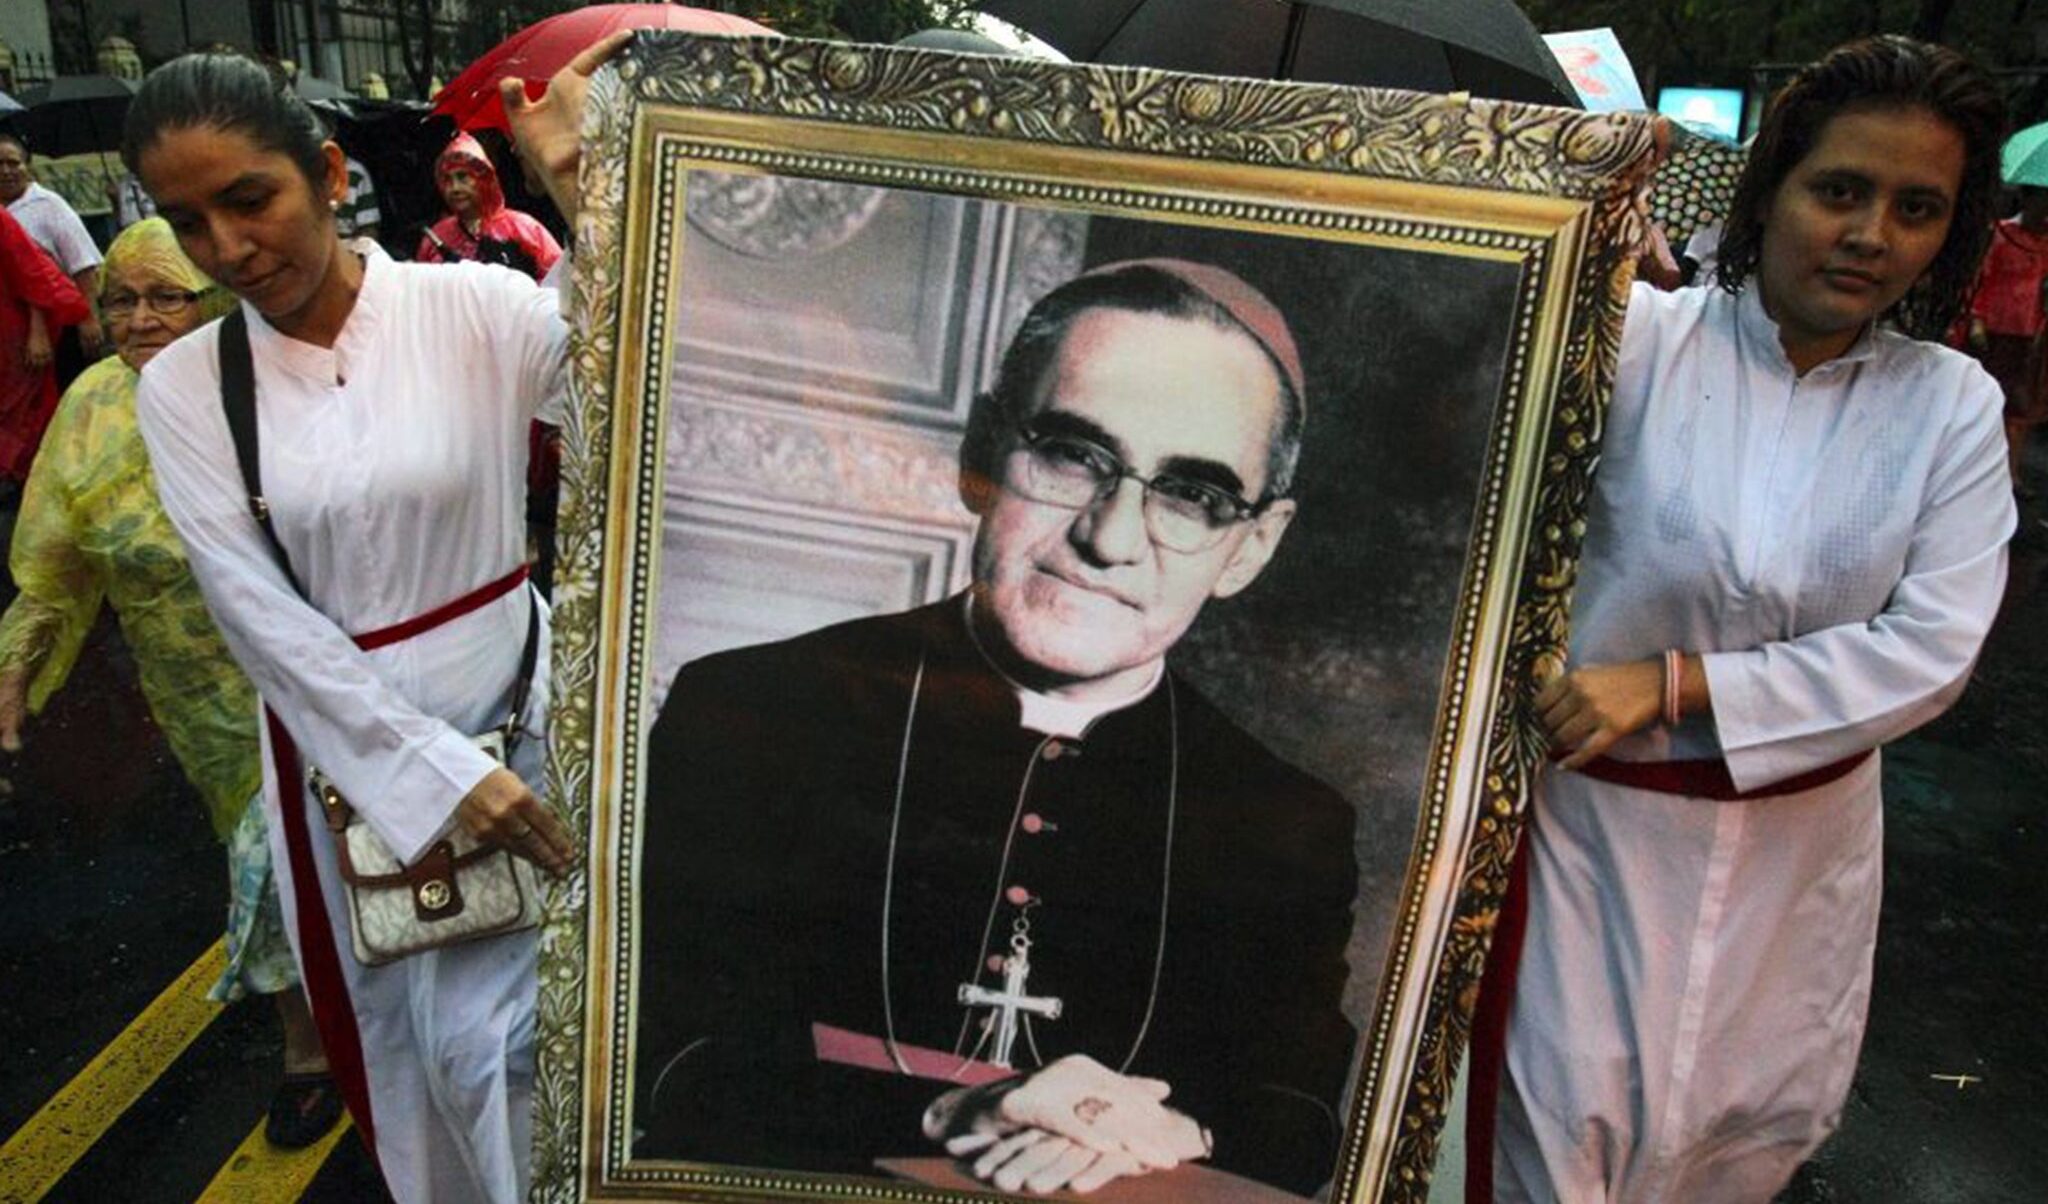 Il ricordo di monsignor Romero, il vescovo scomodo